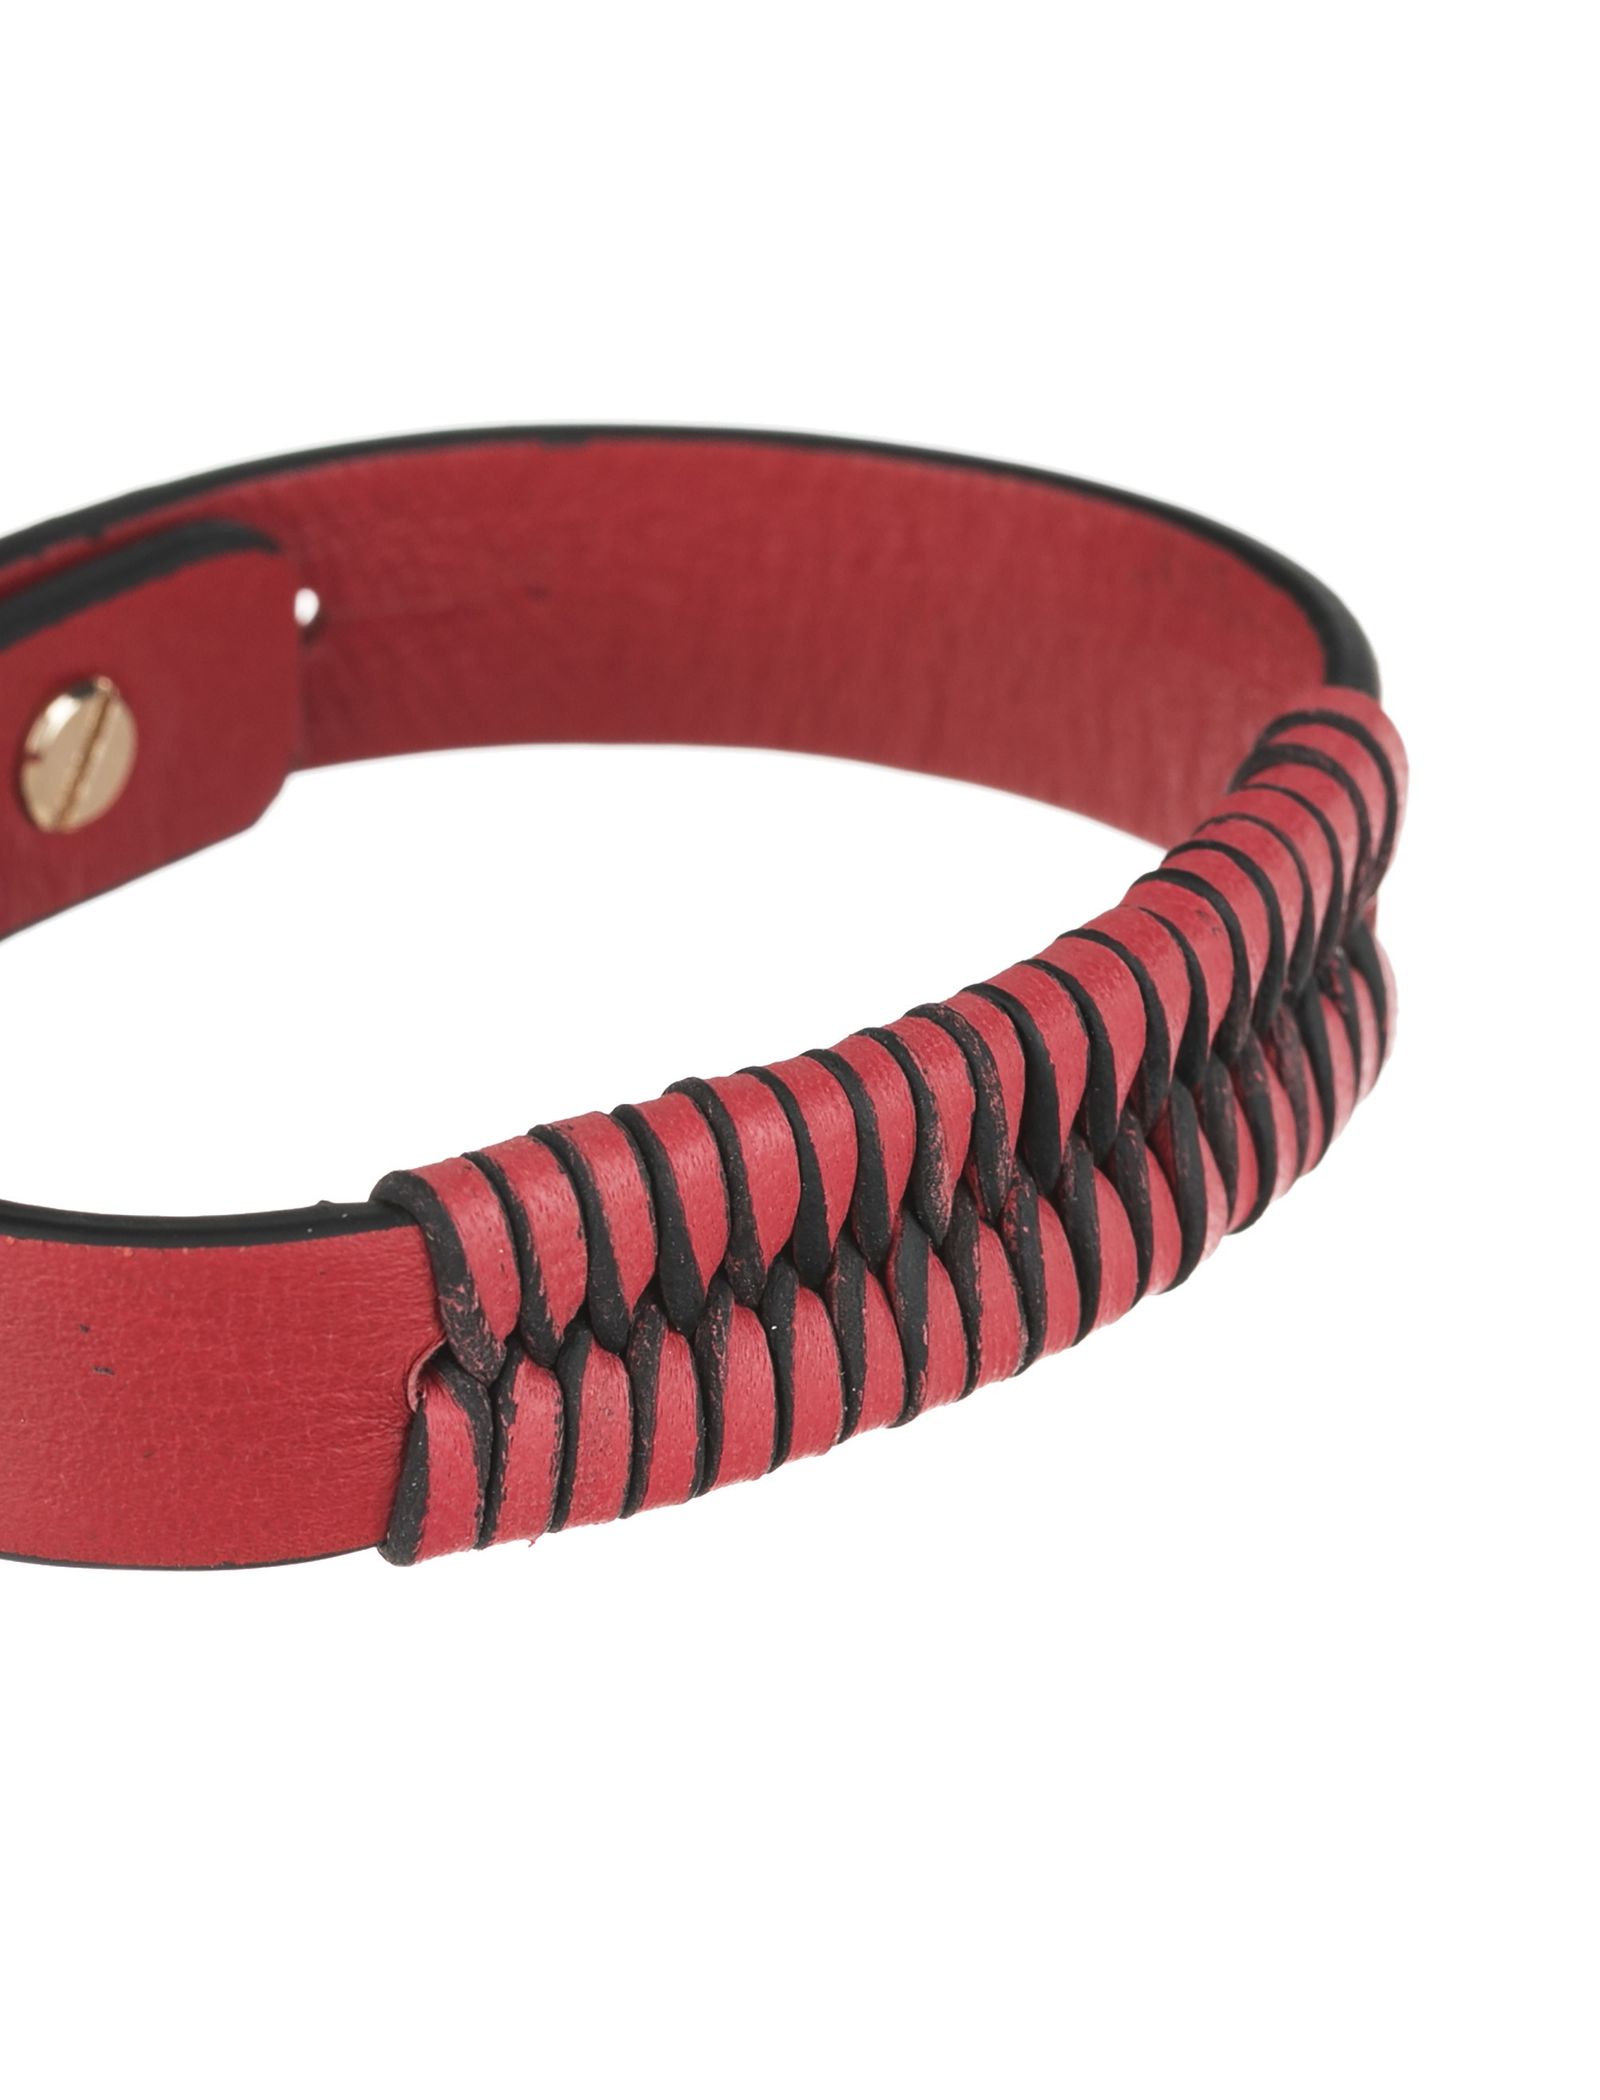 دستبند چرم بزرگسال - عالیخان سایز L - قرمز - 3